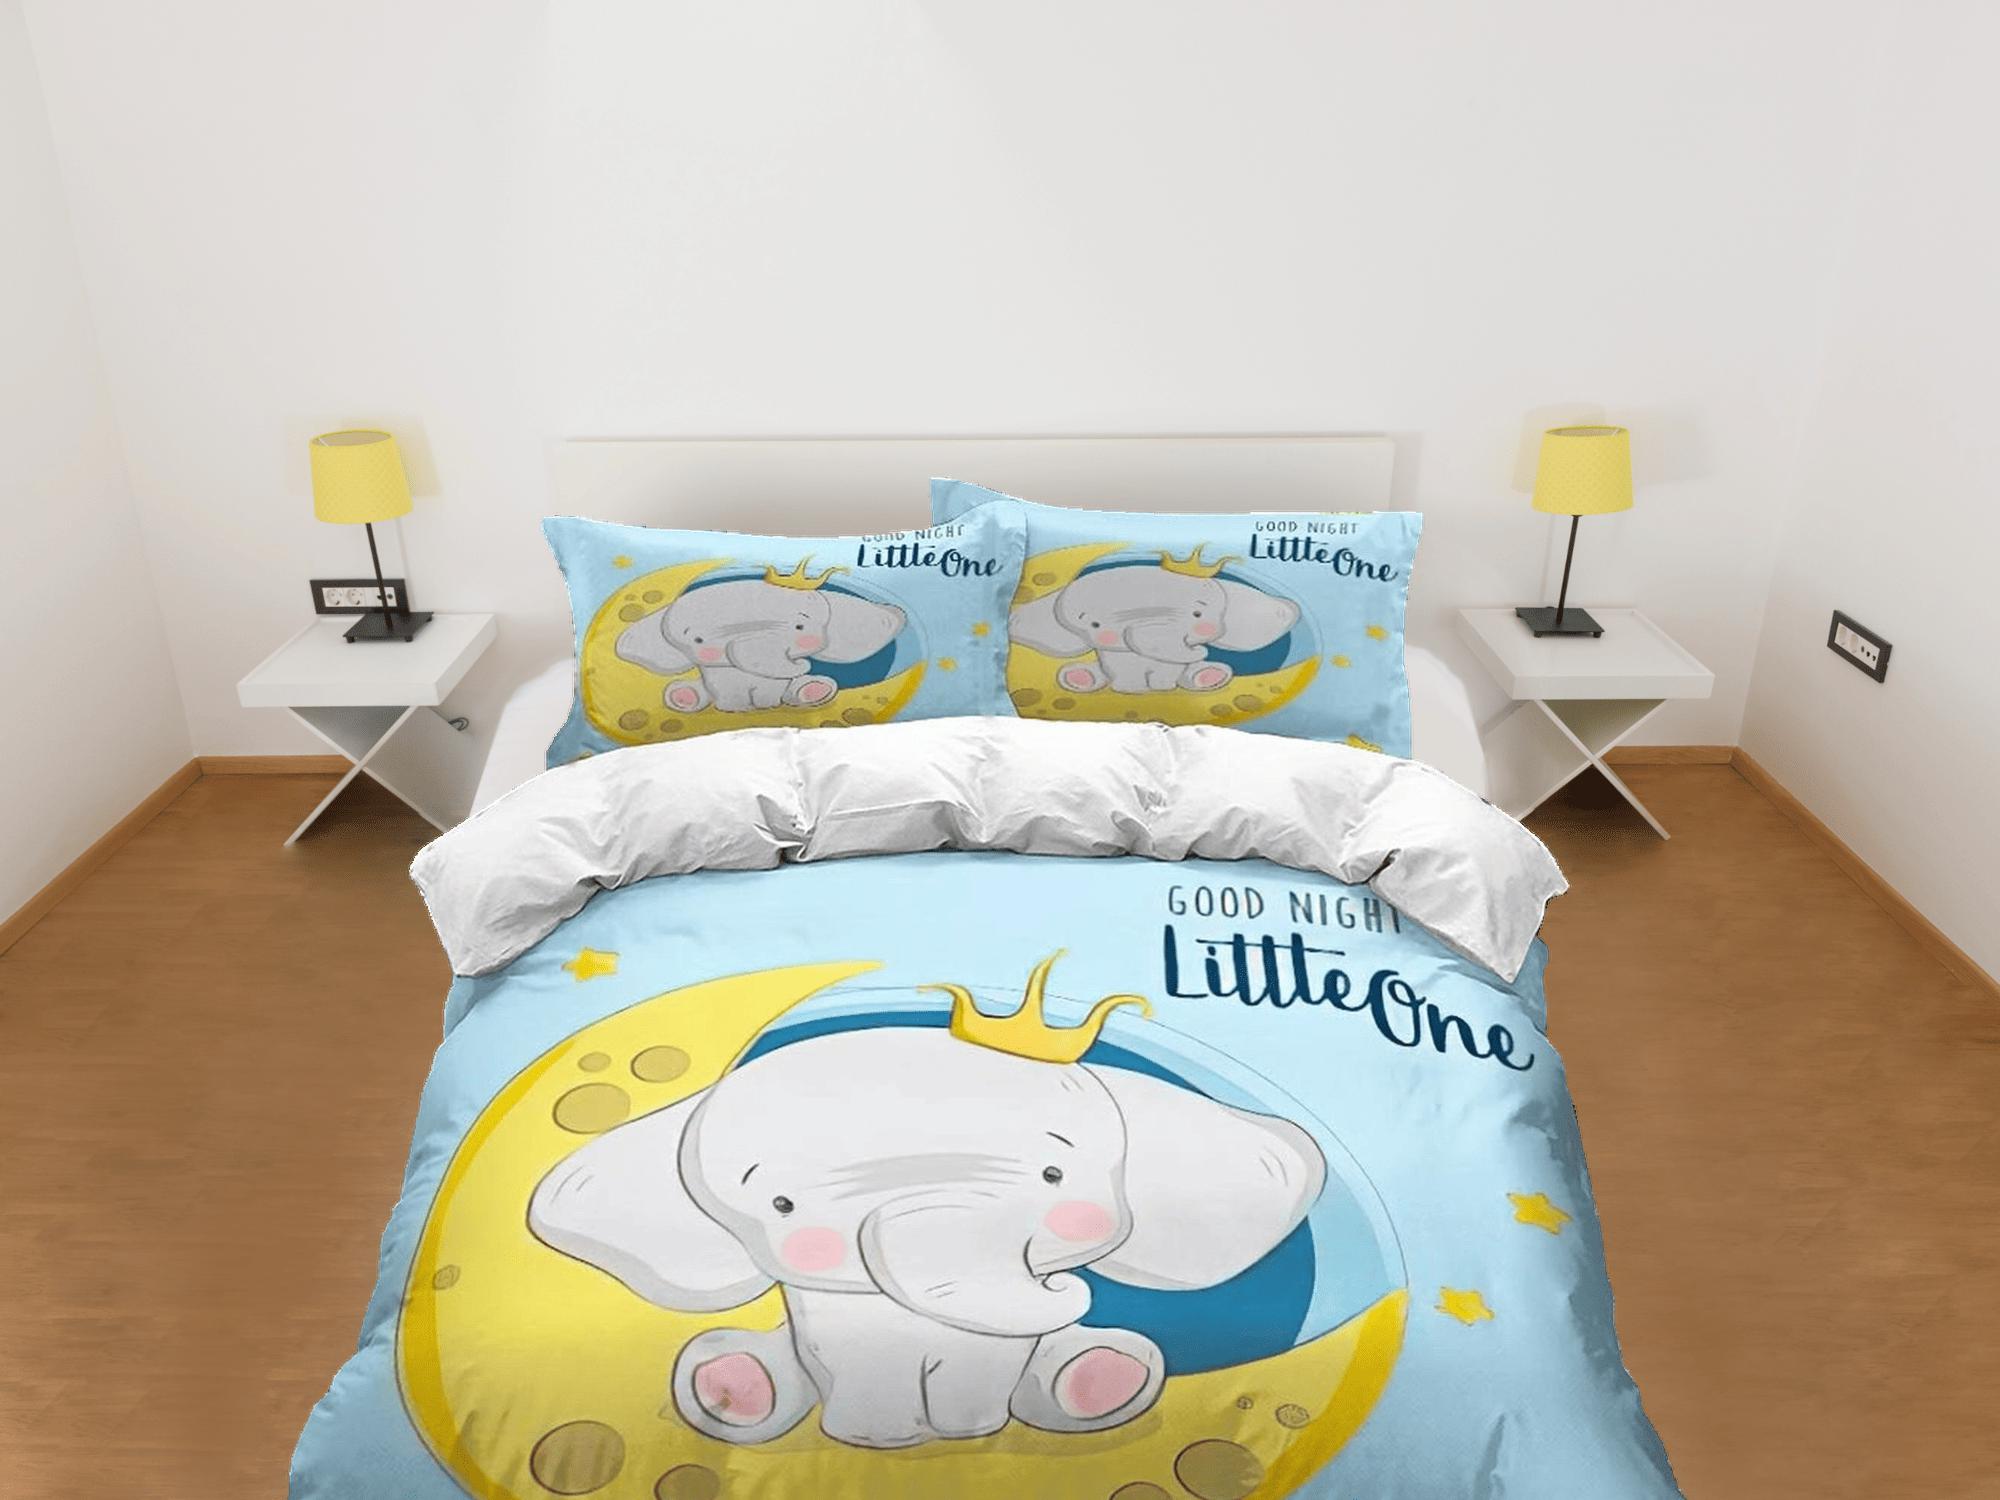 daintyduvet Elephant in crescent moon bedding cute duvet cover set, kids bedding full, nursery bed decor, elephant baby shower, toddler bedding